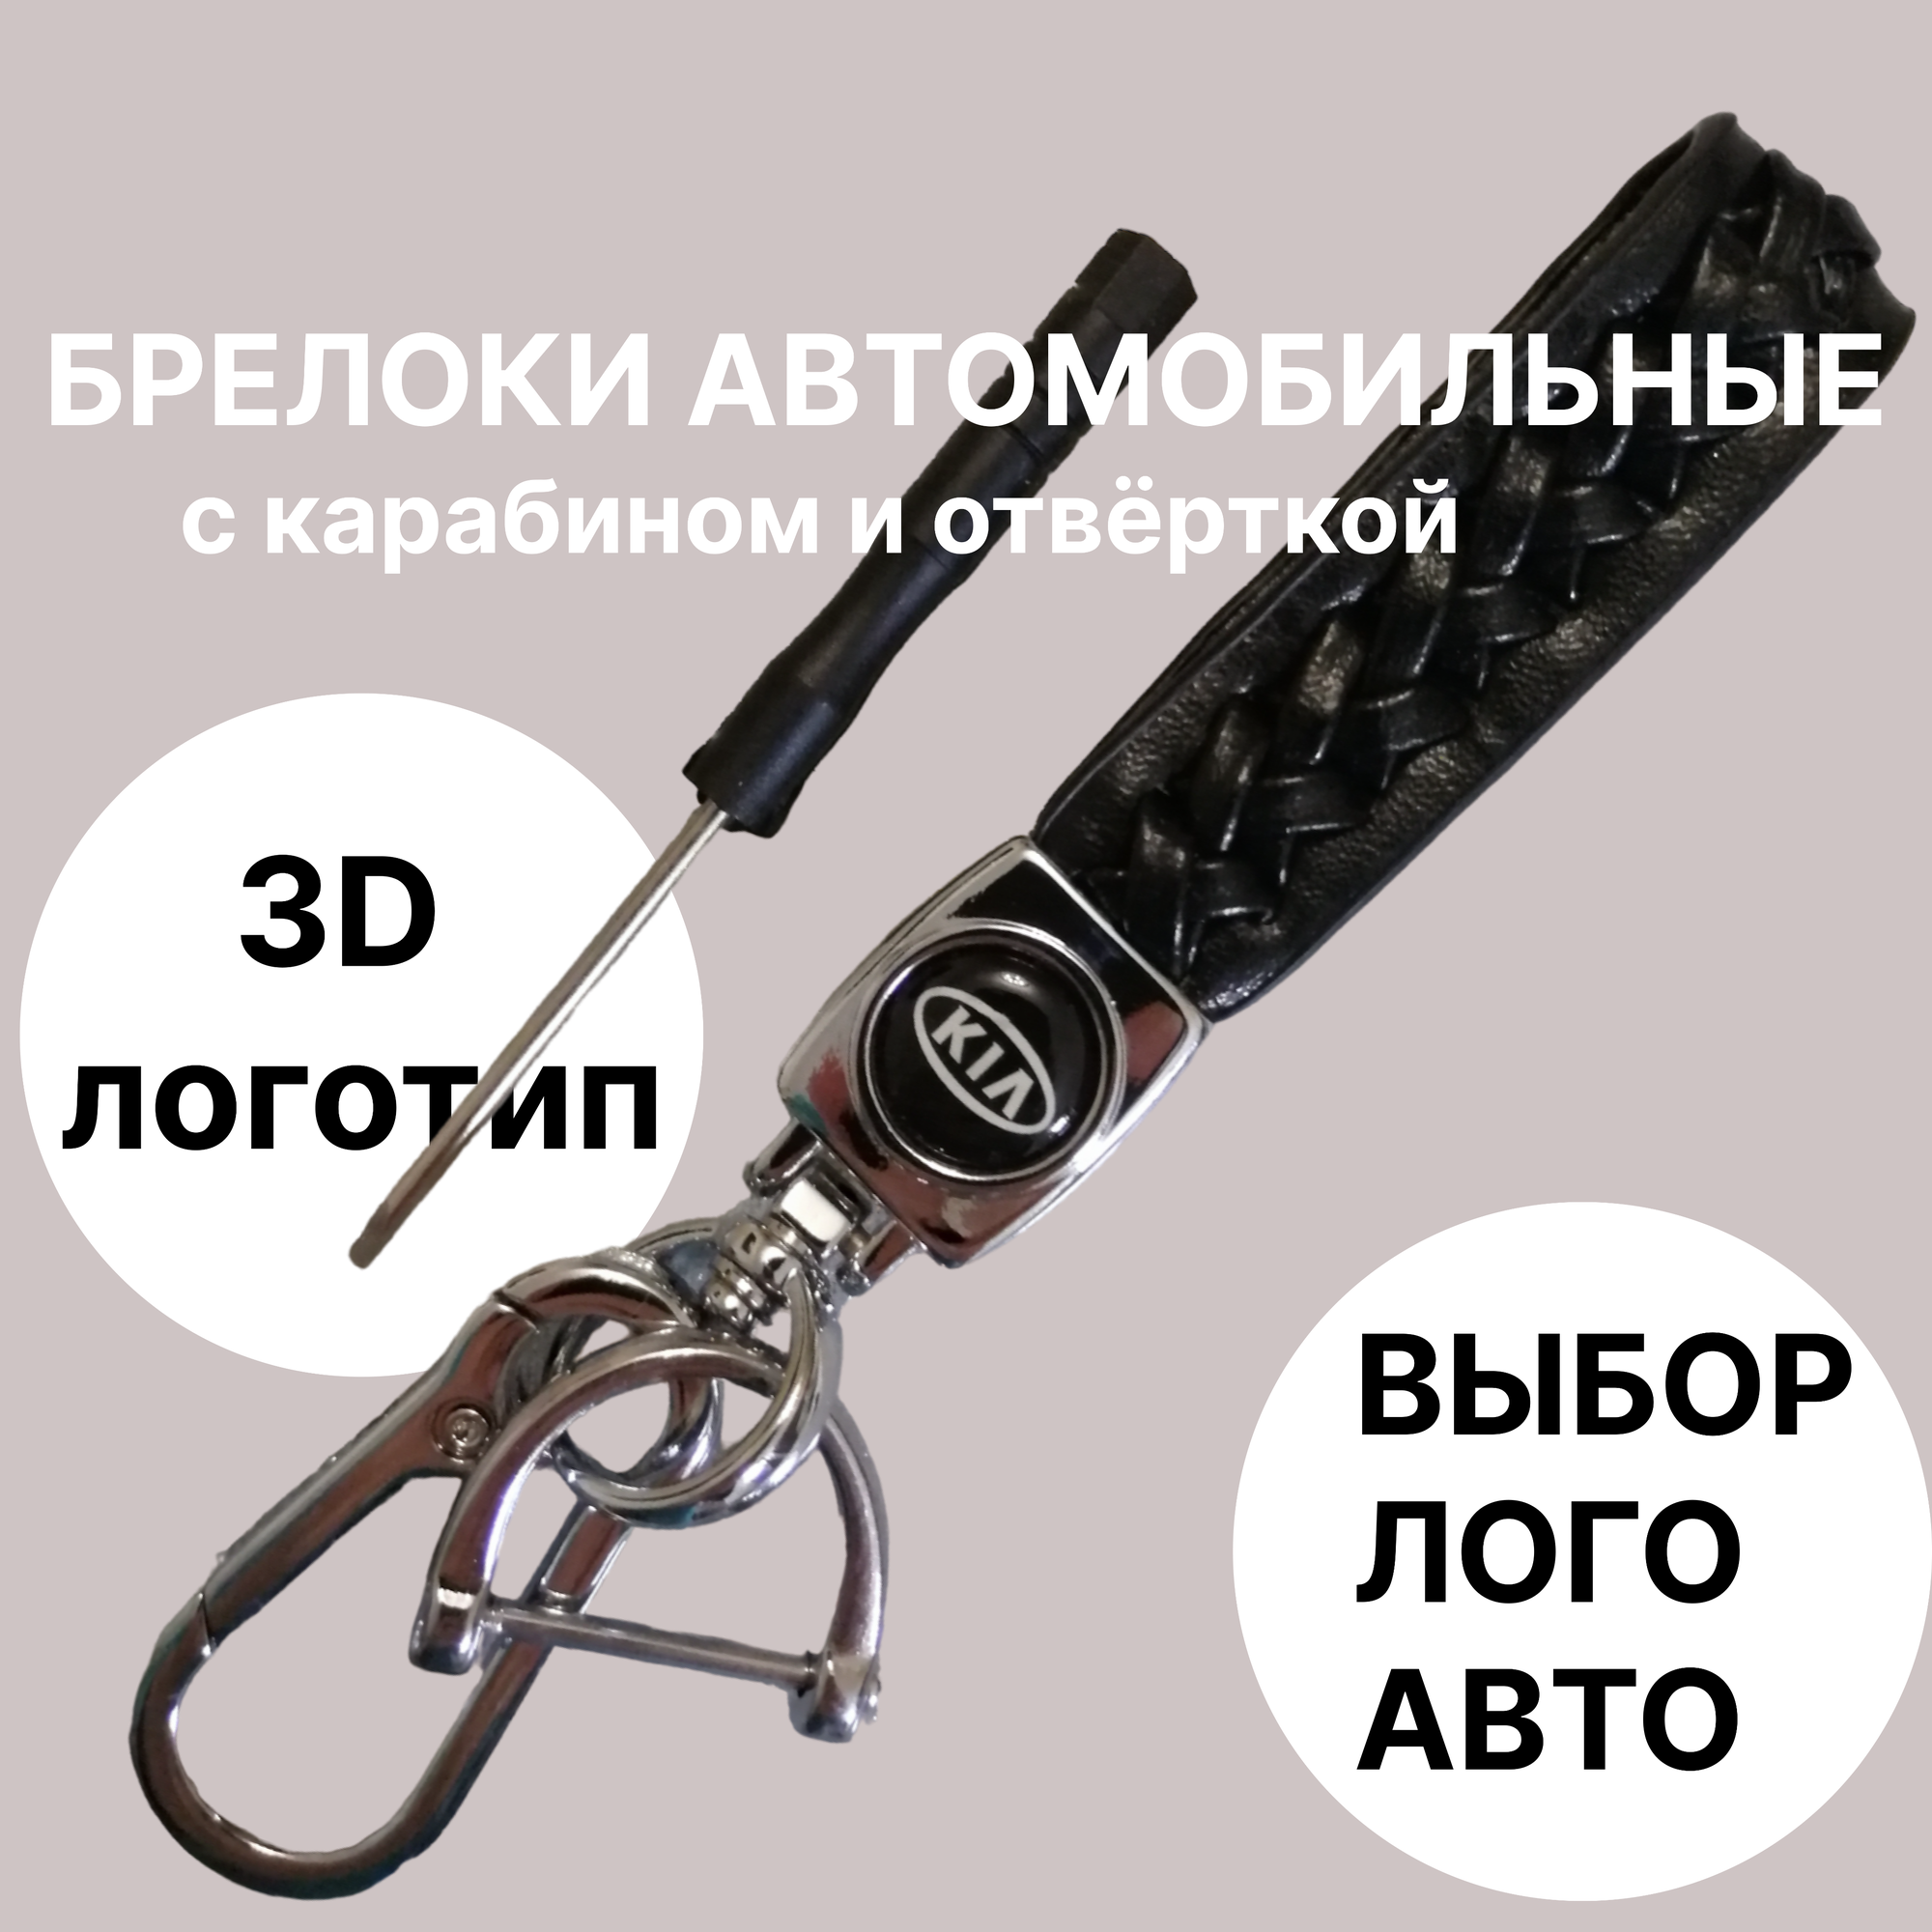 Брелок автомобильный для ключей с логотипом KIA ( КИА) брелок для ключей автомобиля с карабином и отвёрткой